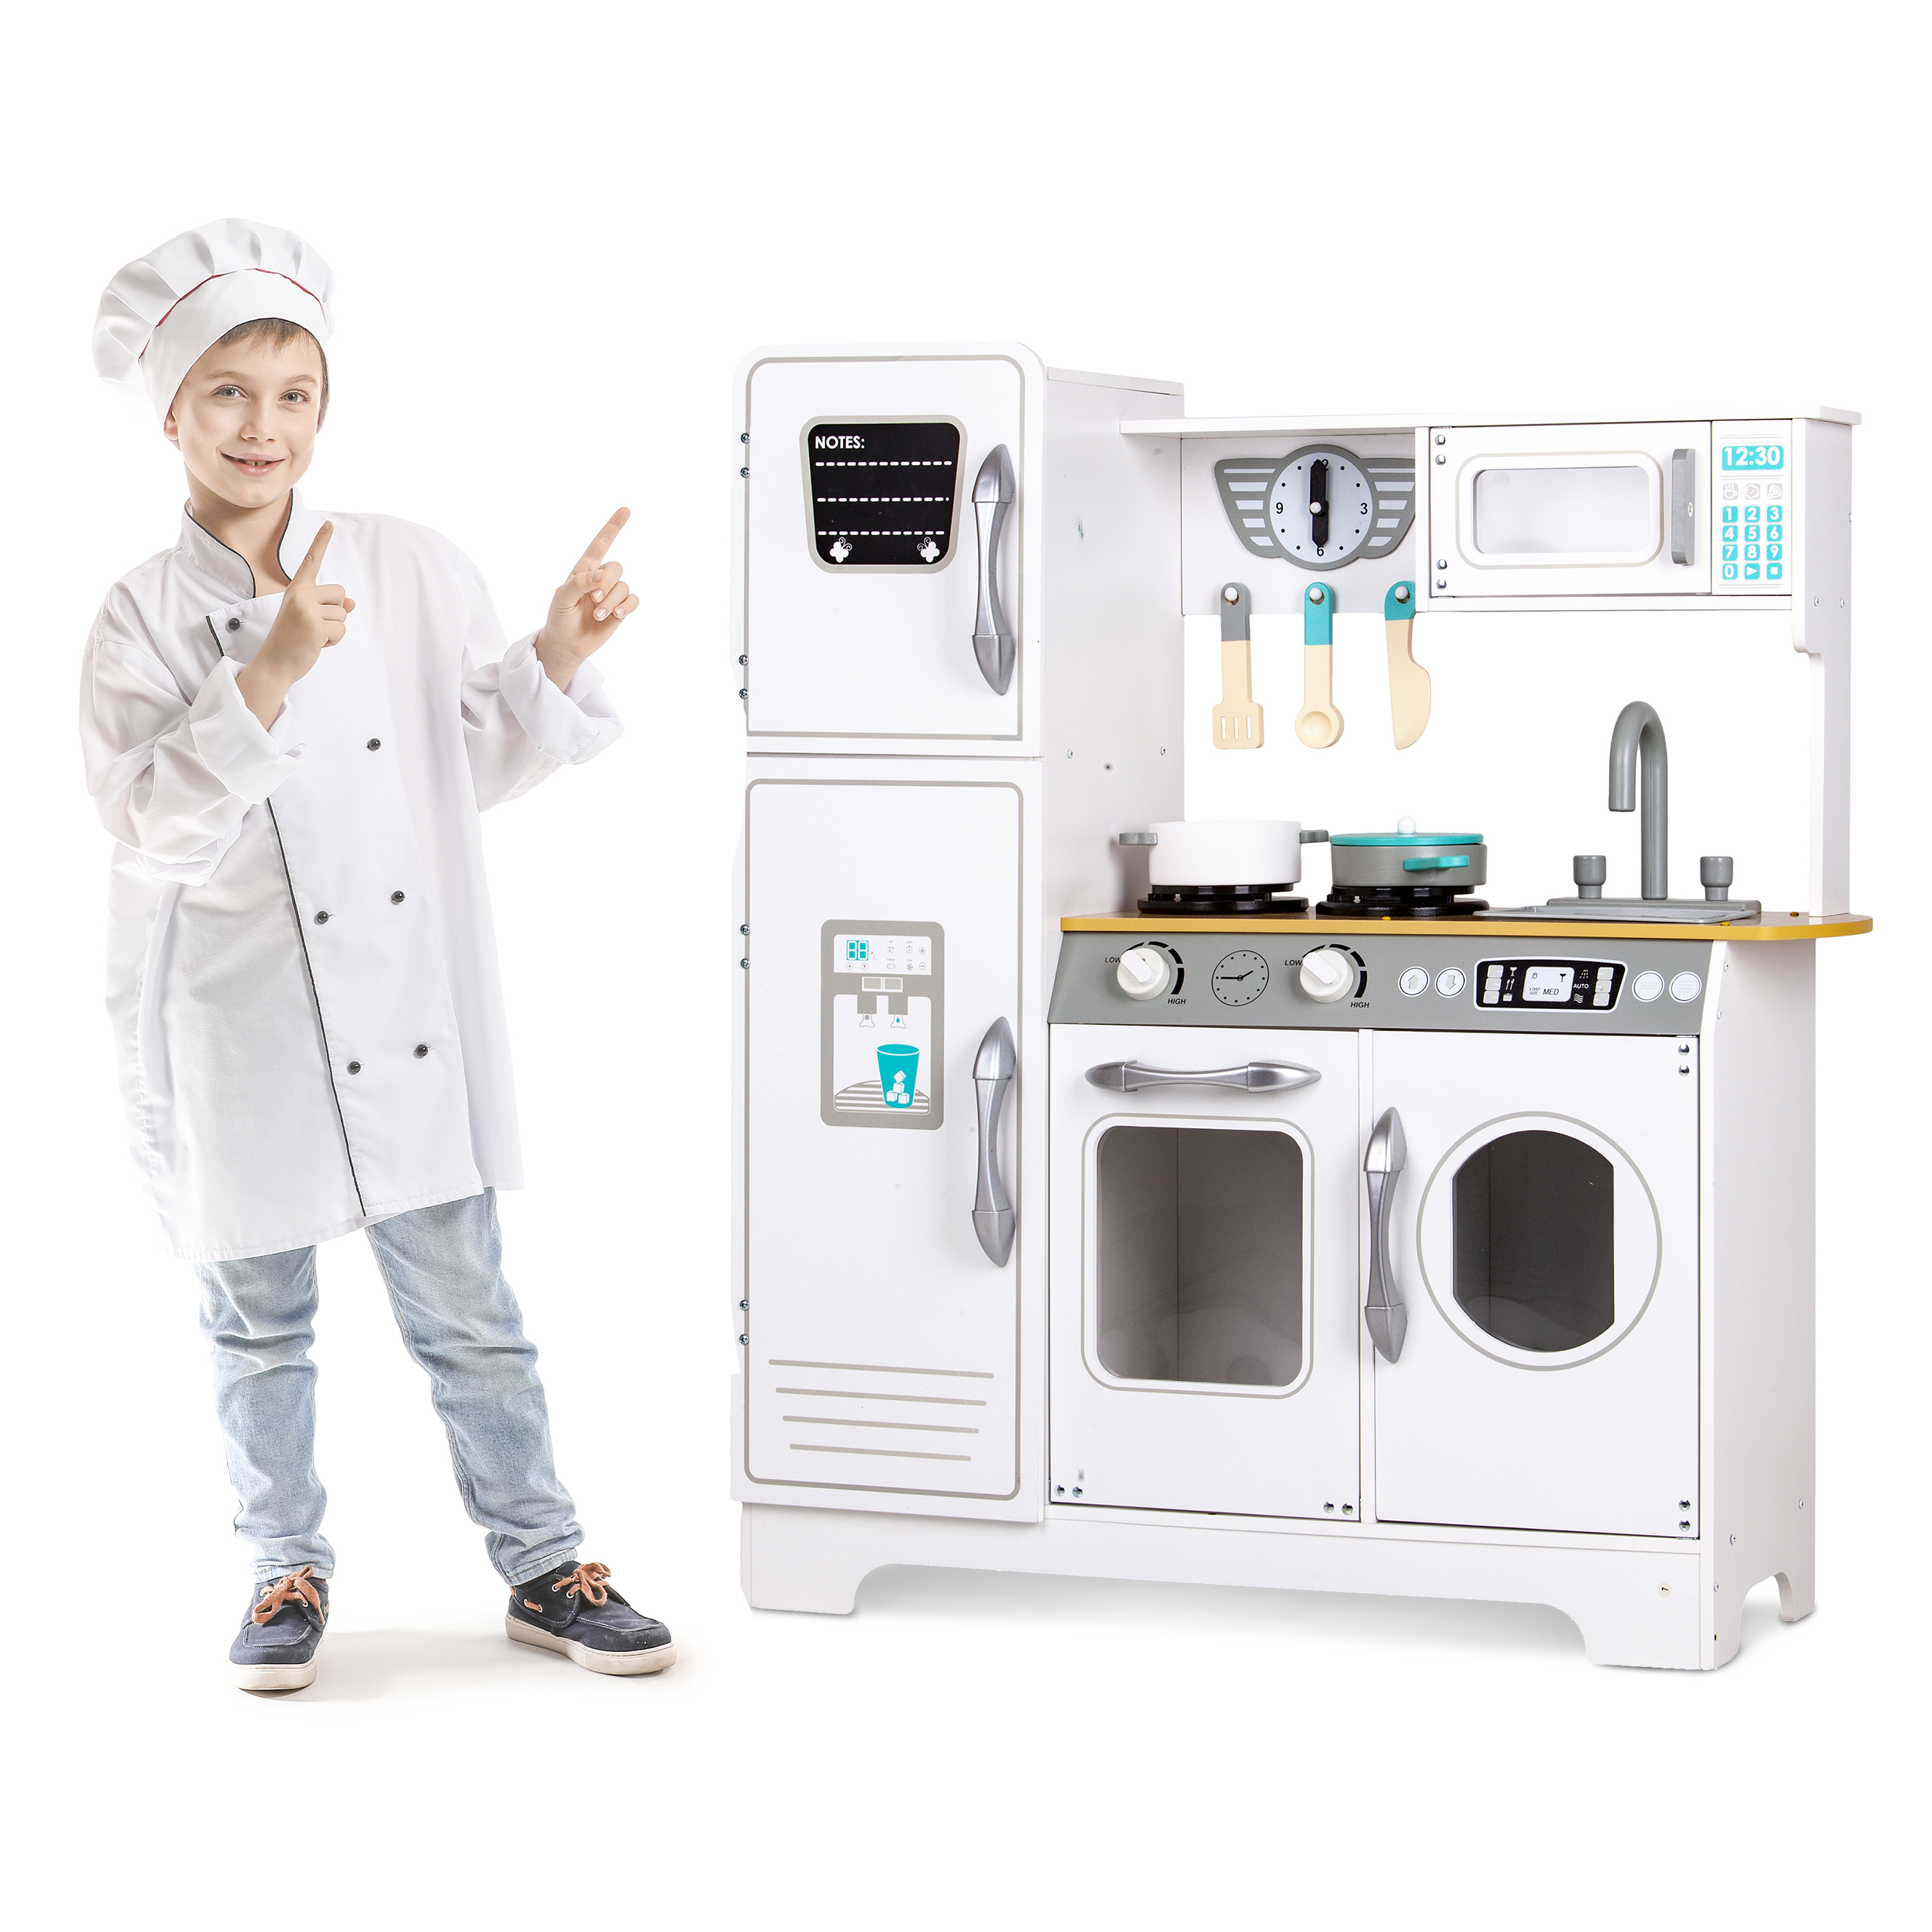 Bucătărie din lemn V3 si sort pentru copii, cu frigider, mașină de spălat, cuptor, cuptor cu microunde, chiuvetă, ceas și 6 accesorii incluse, 3 ani +, Alb/Albastru, Smartic, Set [8]